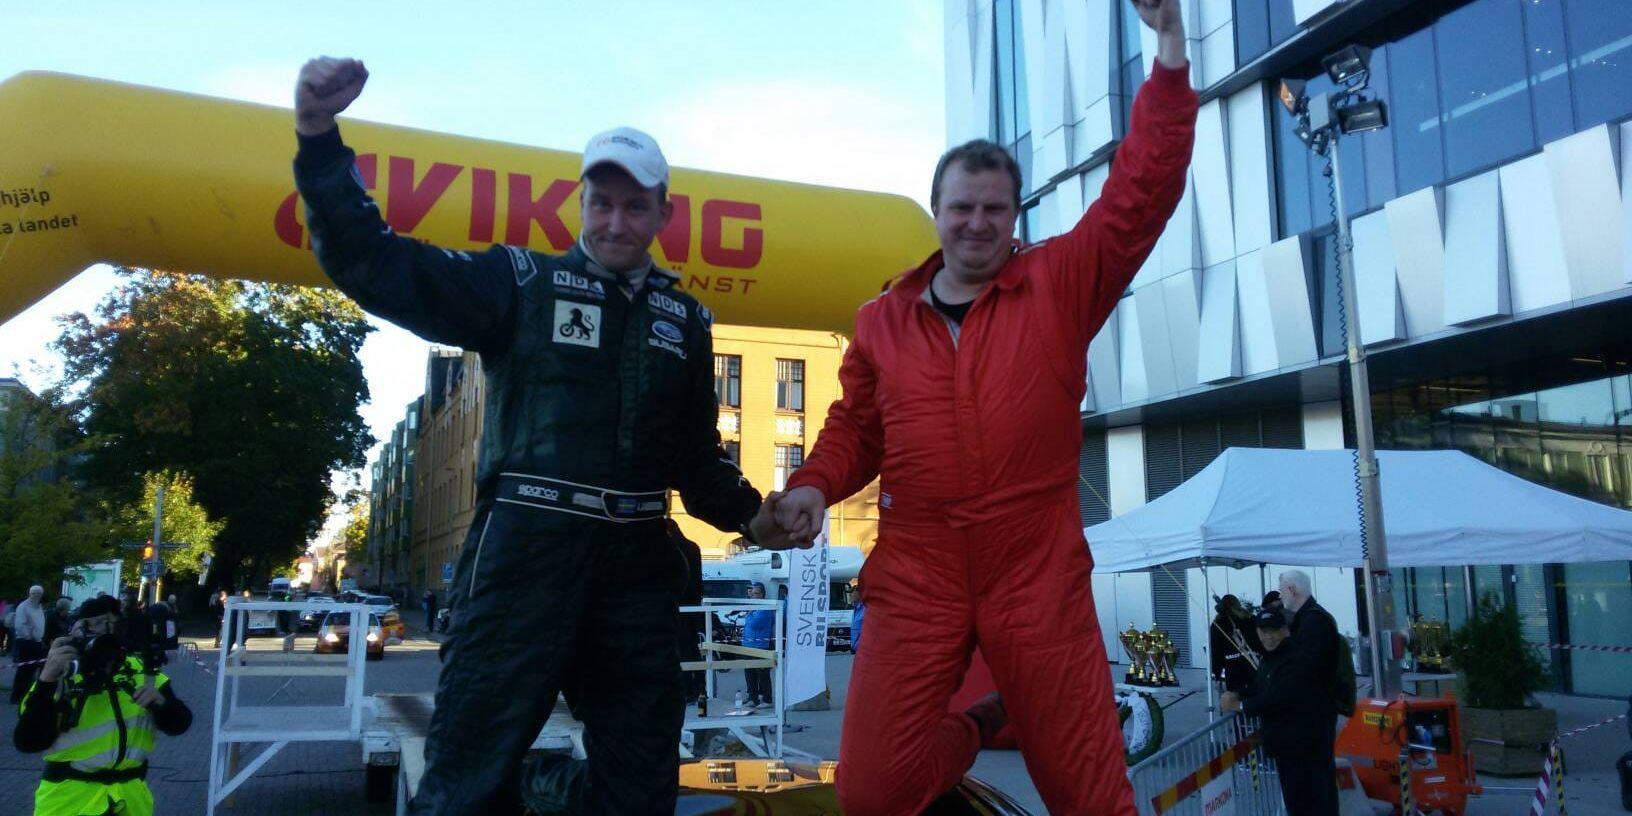 Färske svenske mästaren i rally, Kristoffer Karlsson (till höger) och kartläsaren Peder Johansson, efter segern i Rally Uppsala i helgen. SMK-ekipaget vann klassen otrimmat 4 WD. Jerker Axelsson, också SMK, tog silver i värstingklassen.